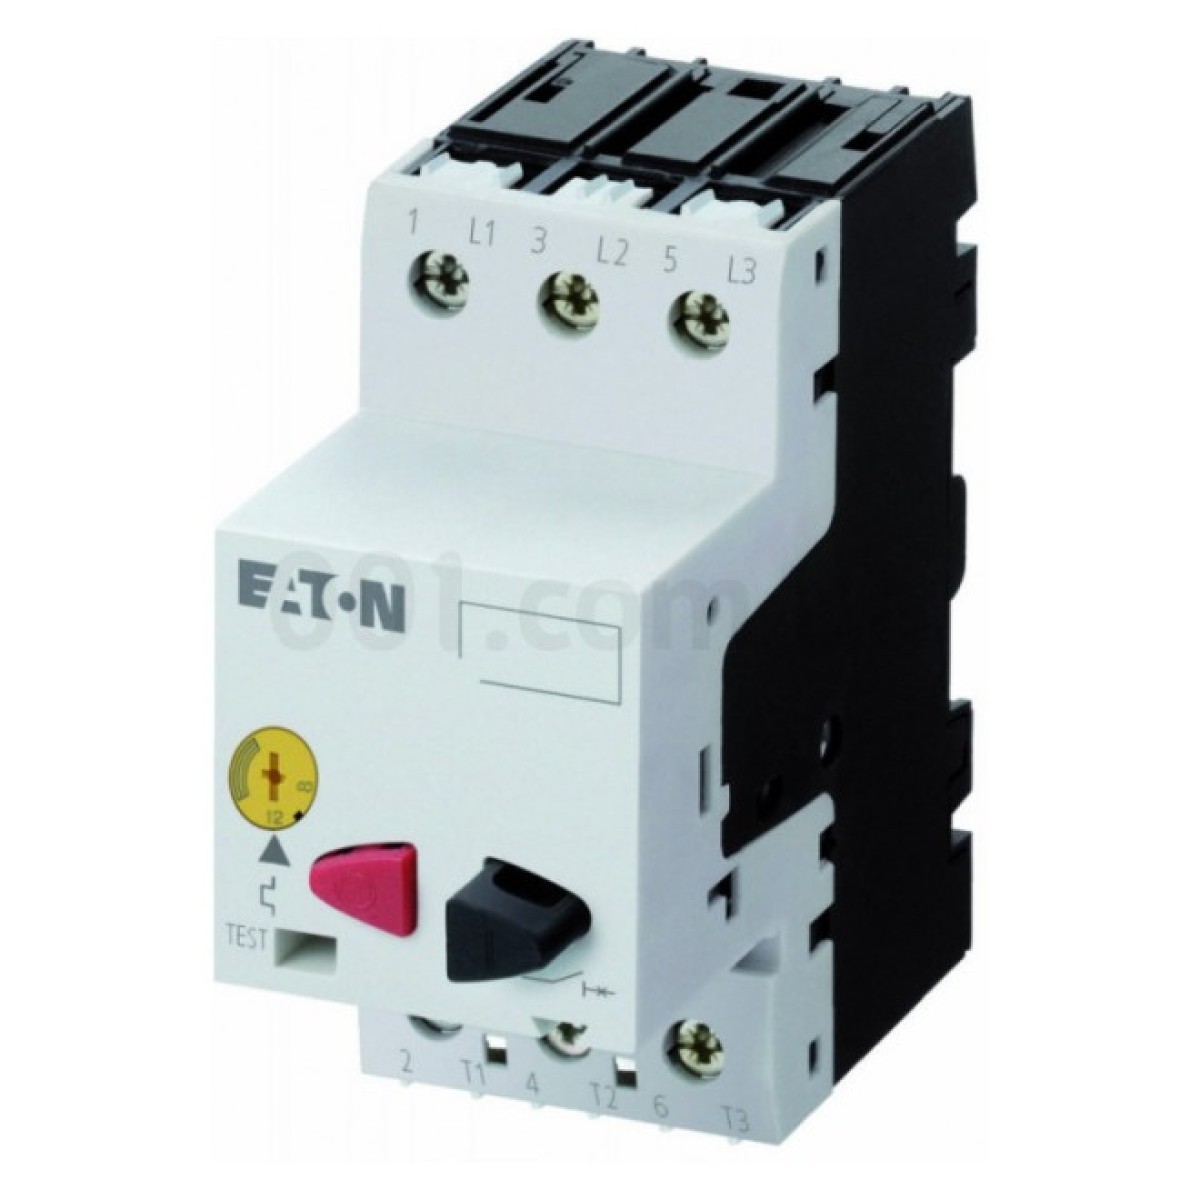 Автоматический выключатель защиты двигателя PKZM01-4 Ir=2,5...4А, Eaton (Moeller) 256_256.jpg